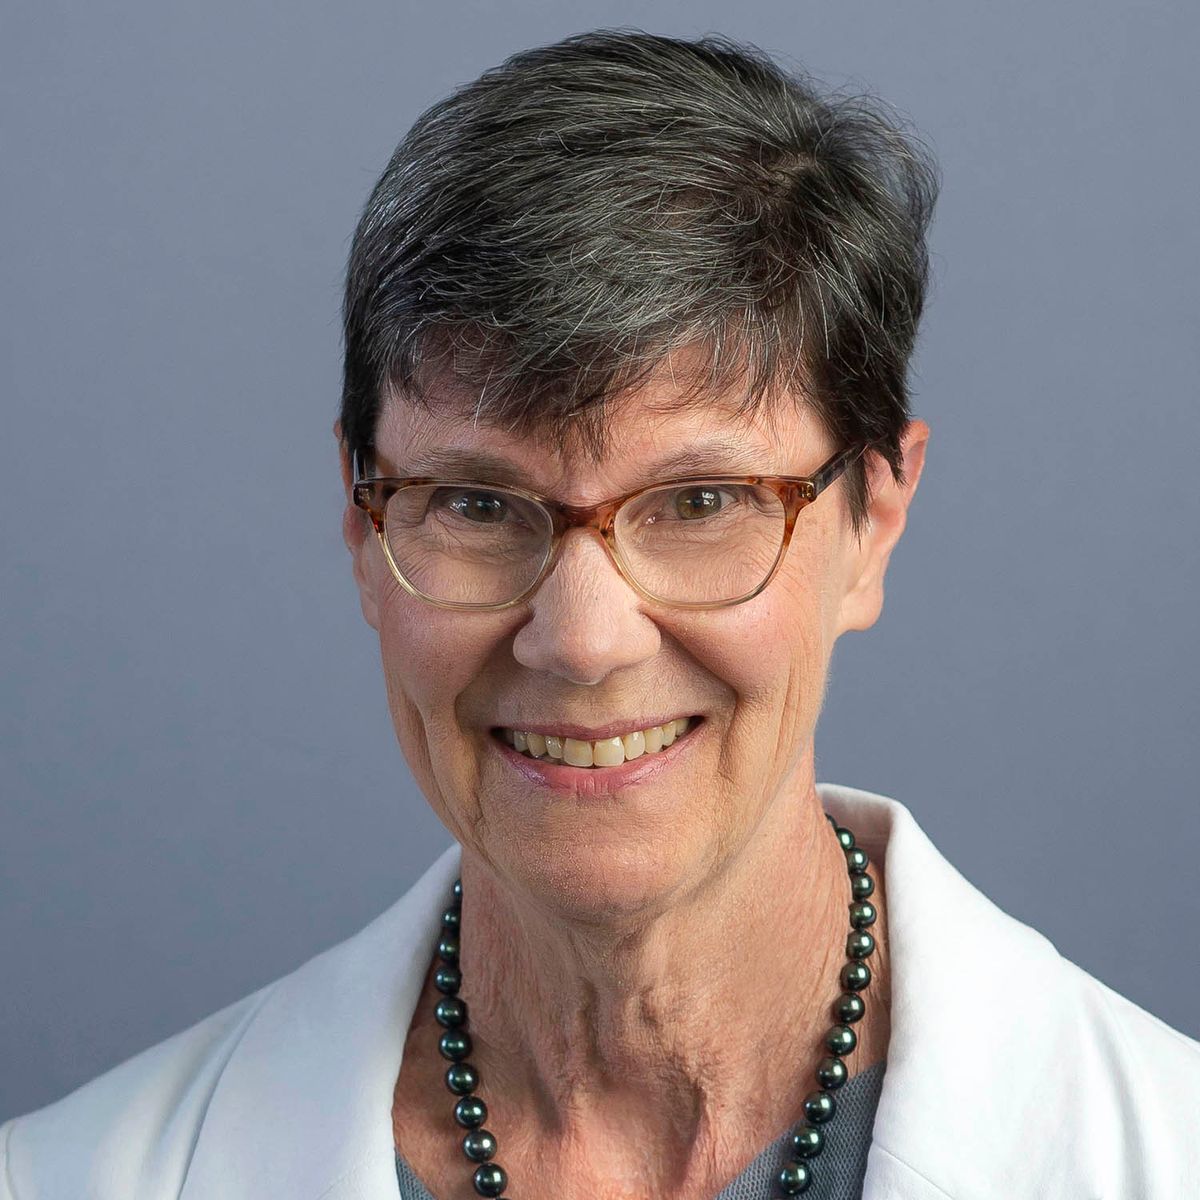 Dr. Helene M. Langevin ("Helene Langevin")